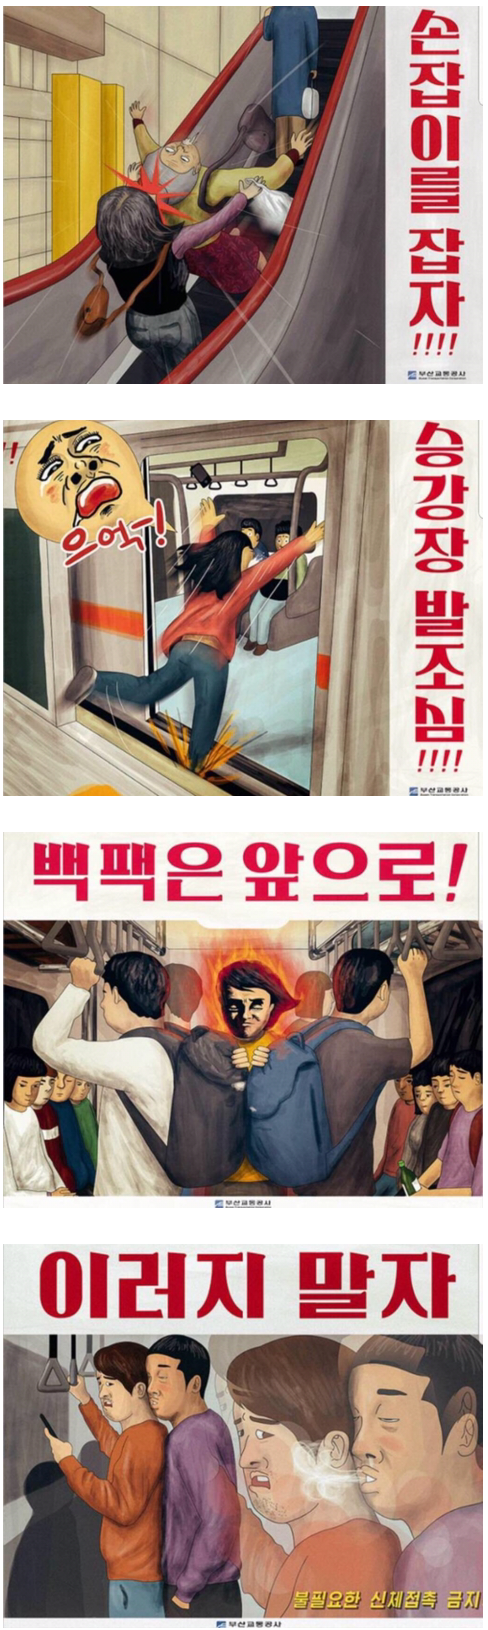 부산지하철 공익광고.png